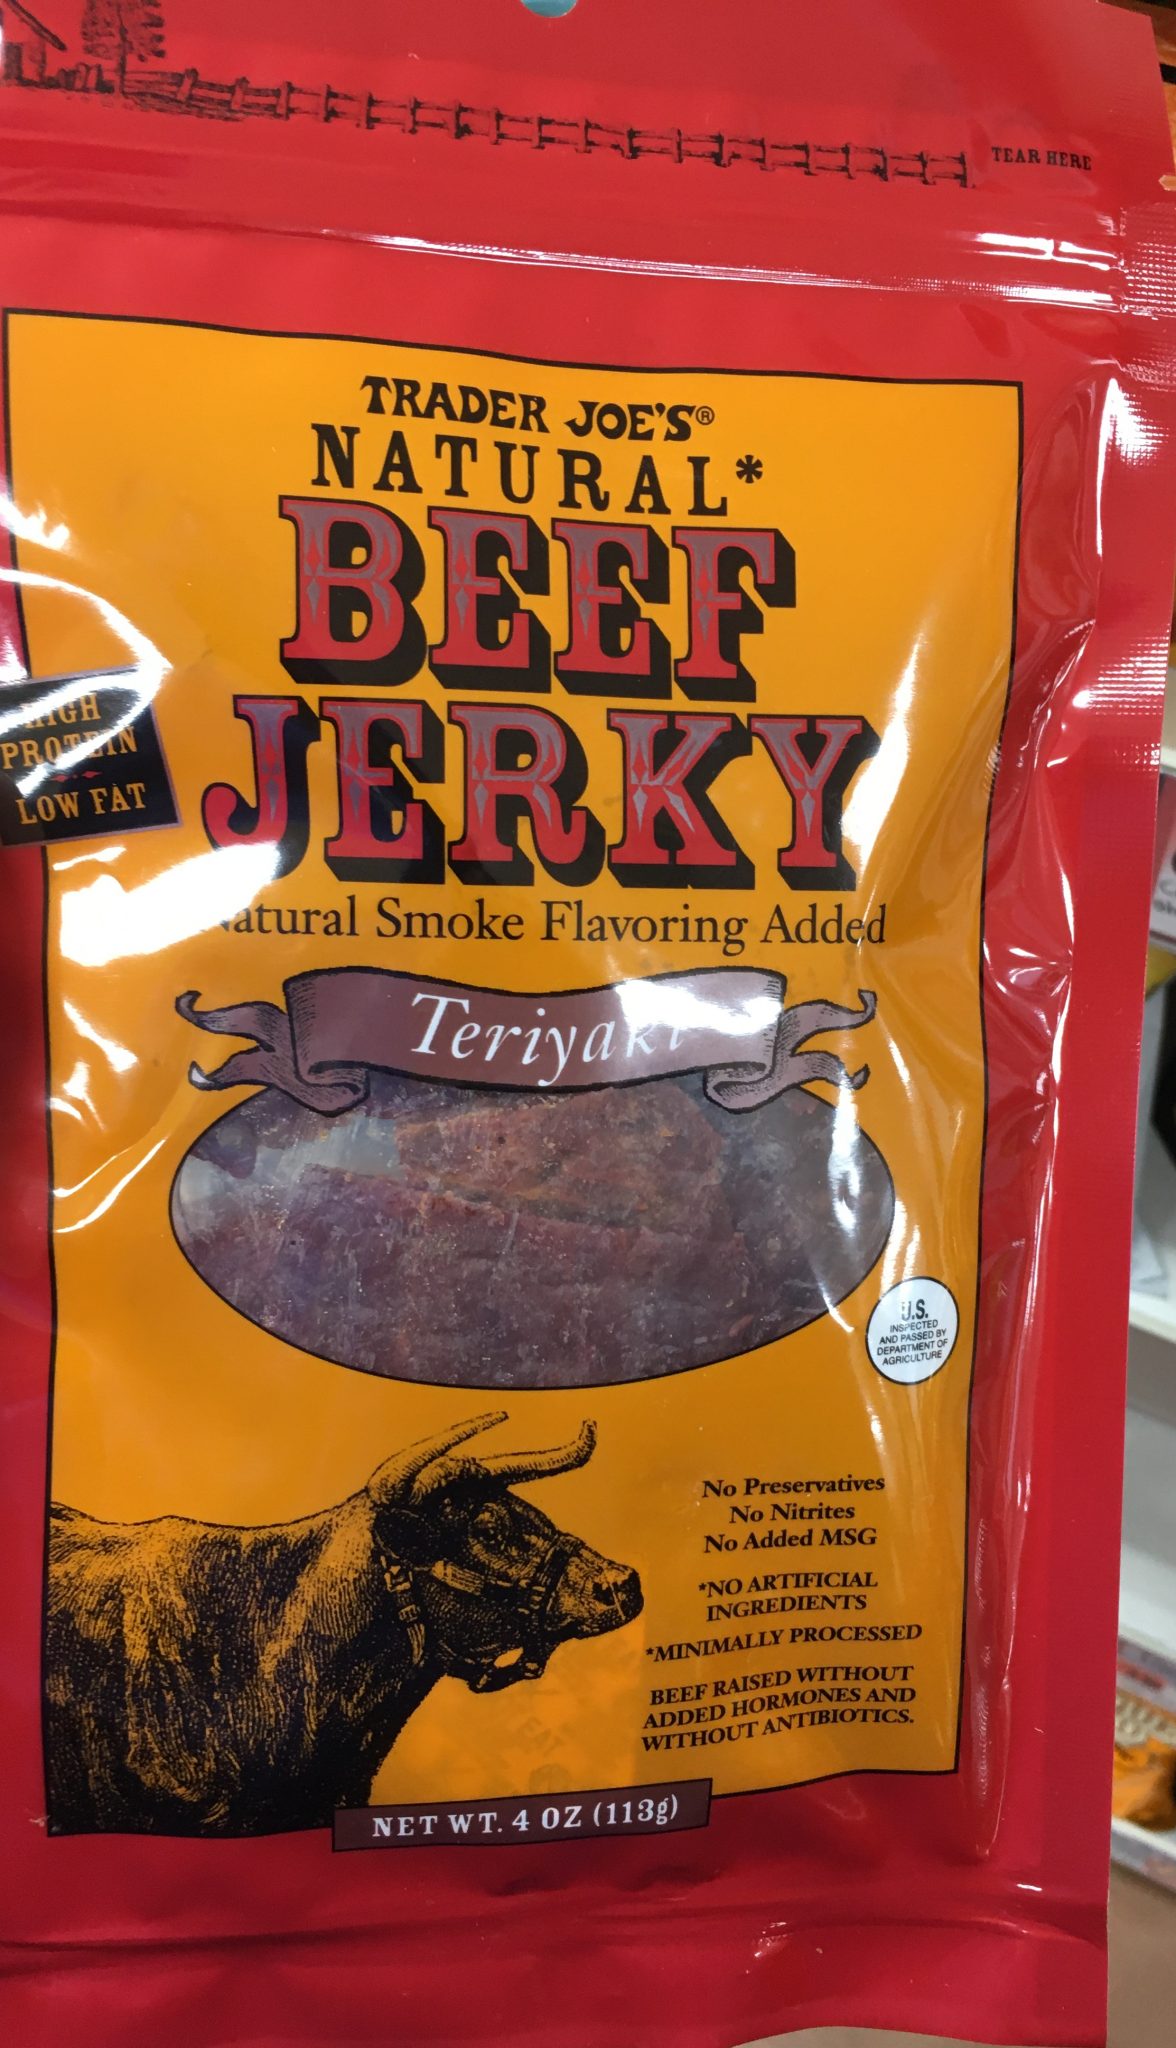 Trader Joe's Beef Jerky, Natural Teriyaki - Trader Joe's Reviews